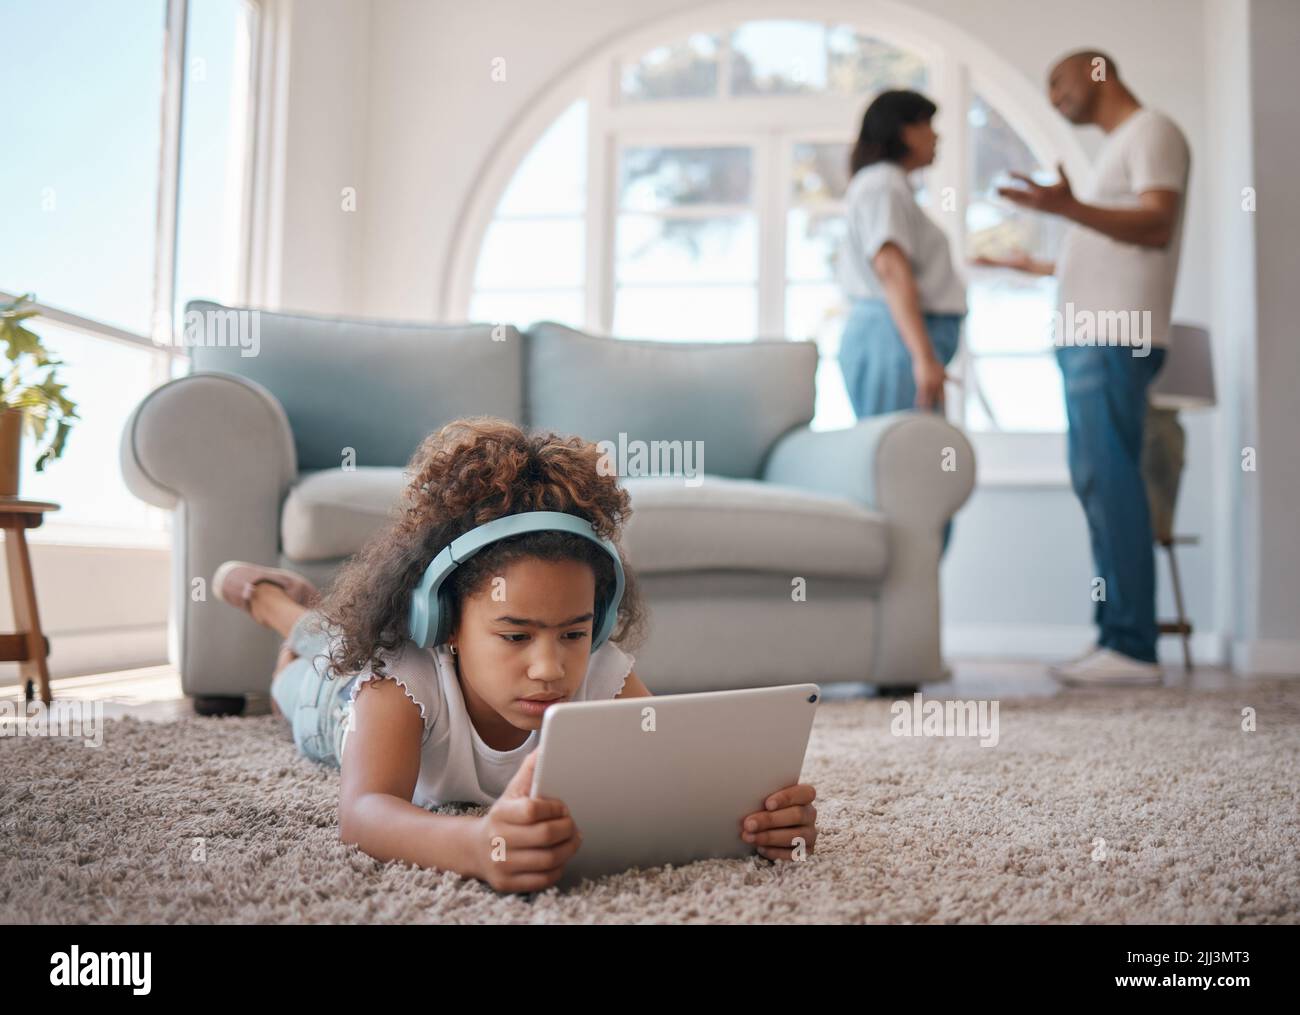 Luchar alrededor de los niños nunca está bien. Una niña que usa una tableta digital mientras sus padres discuten. Foto de stock